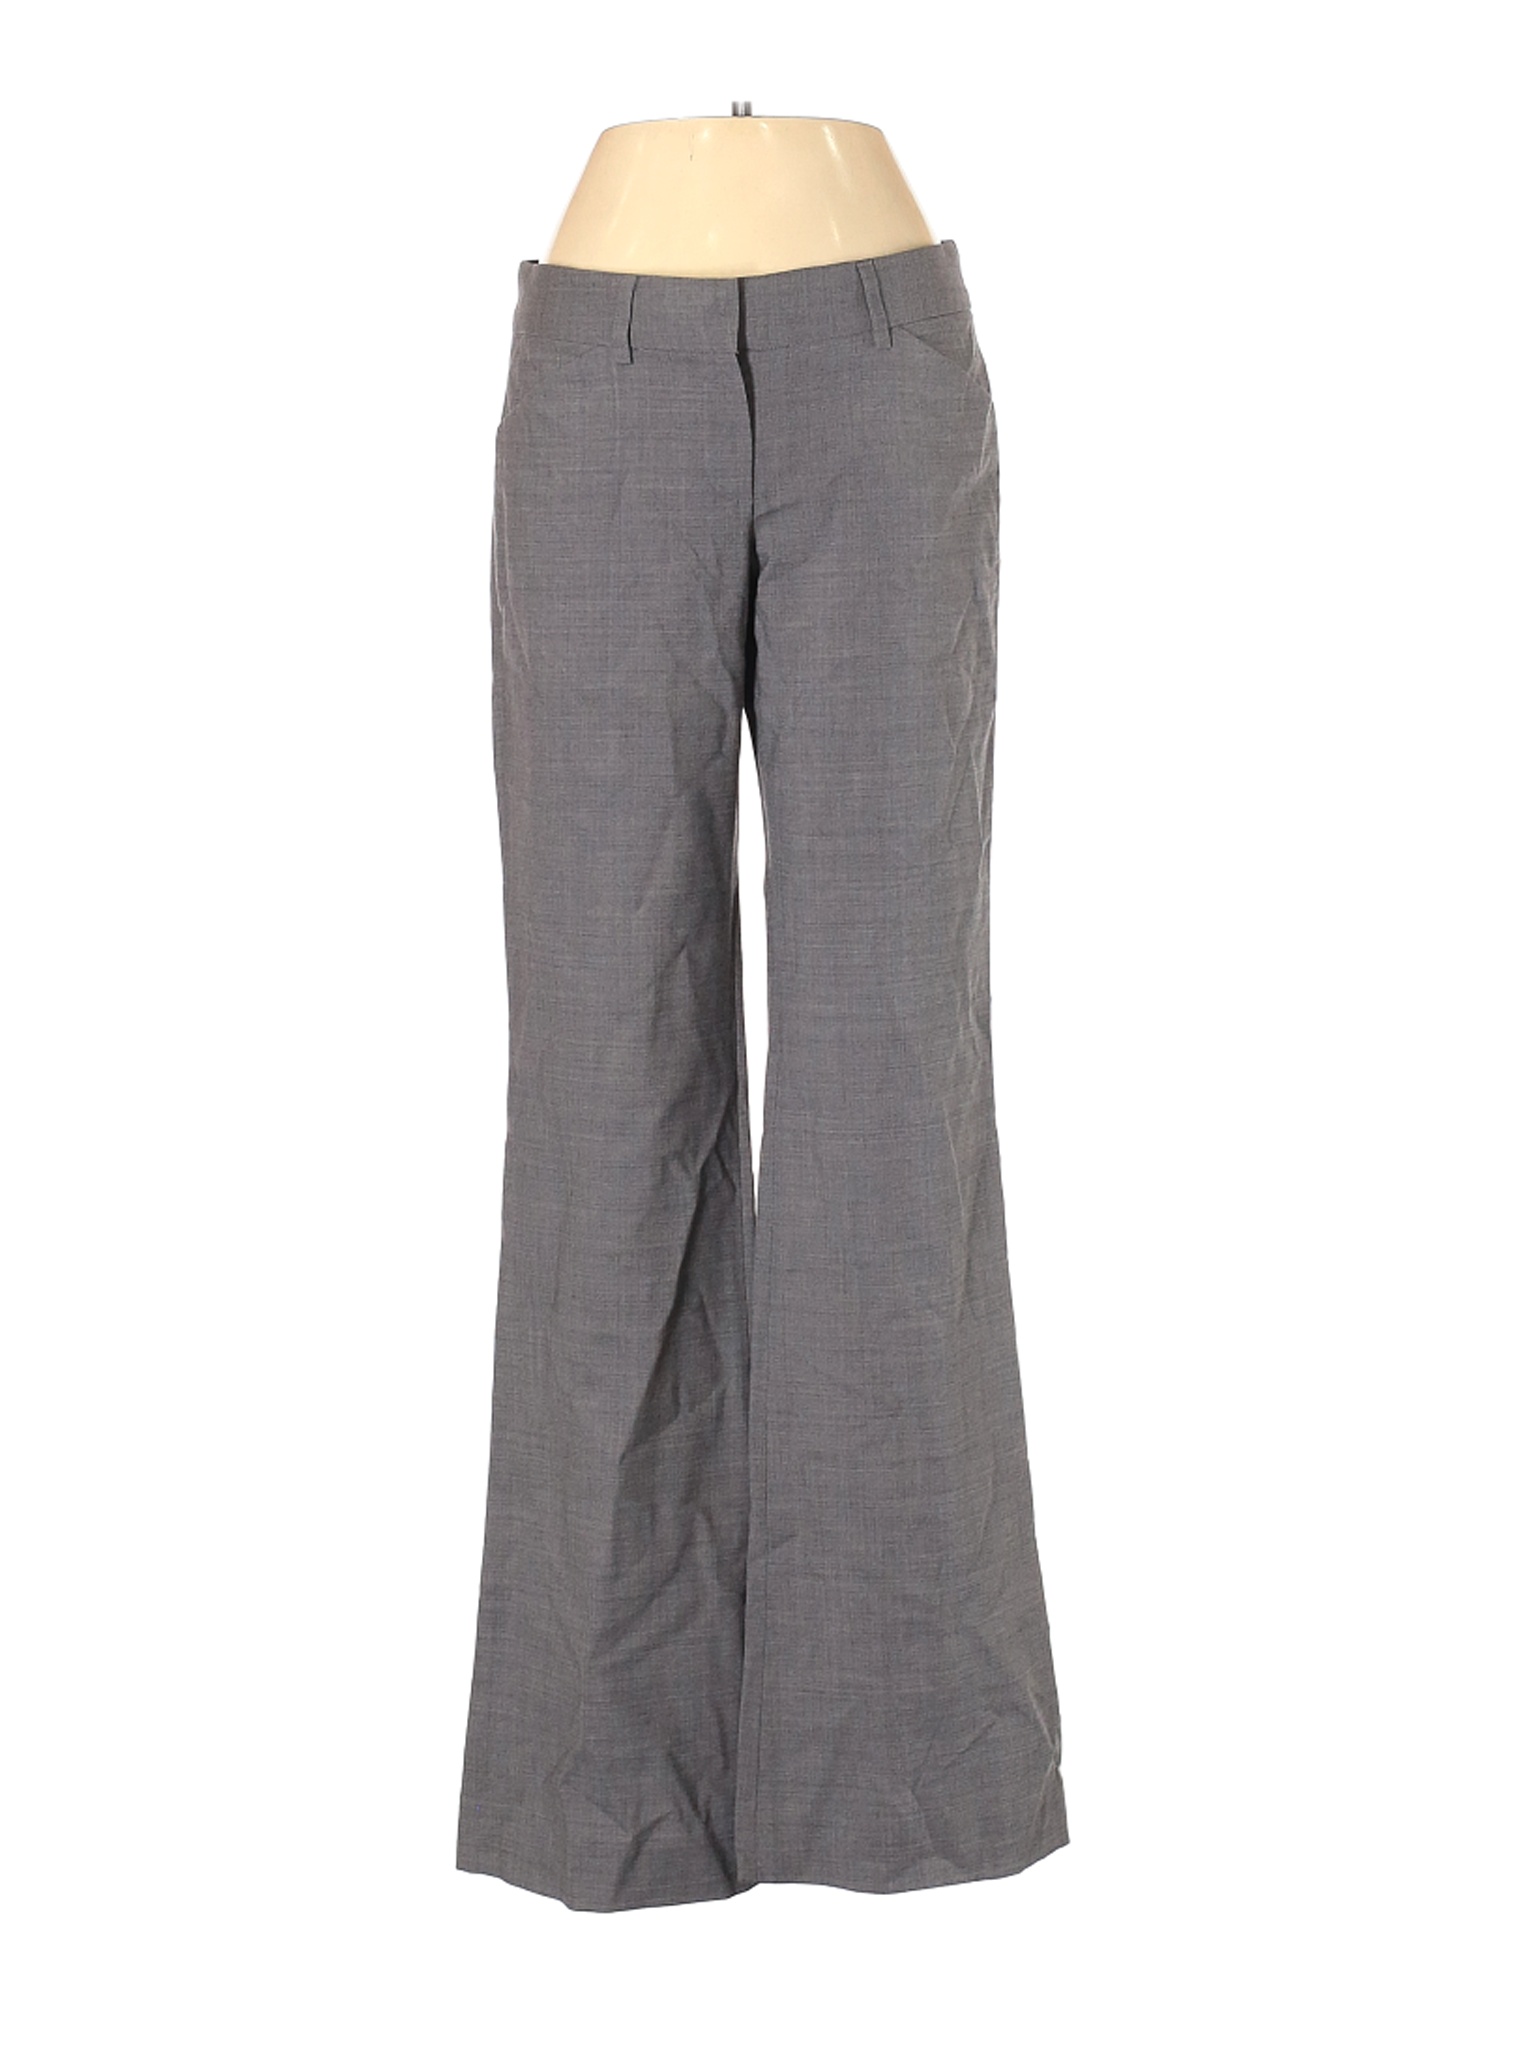 Theory Women Gray Wool Pants 0 | eBay